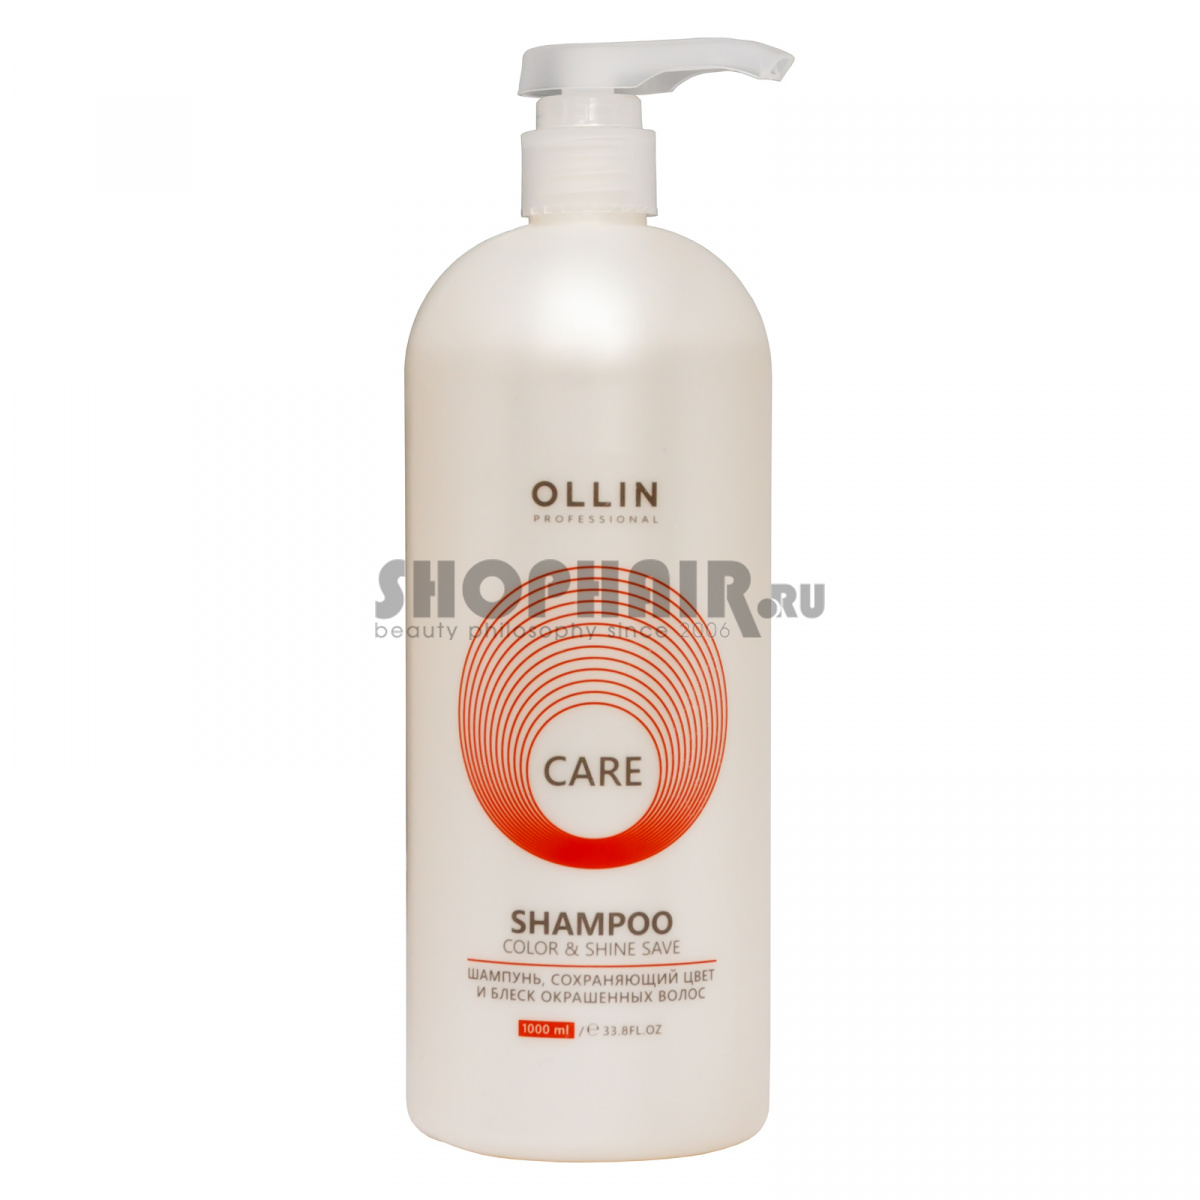 Ollin Professional Care Color and Shine Save Shampoo - Шампунь, сохраняющий цвет и блеск окрашенных волос 1000 мл Ollin Professional (Россия) купить по цене 753 руб.